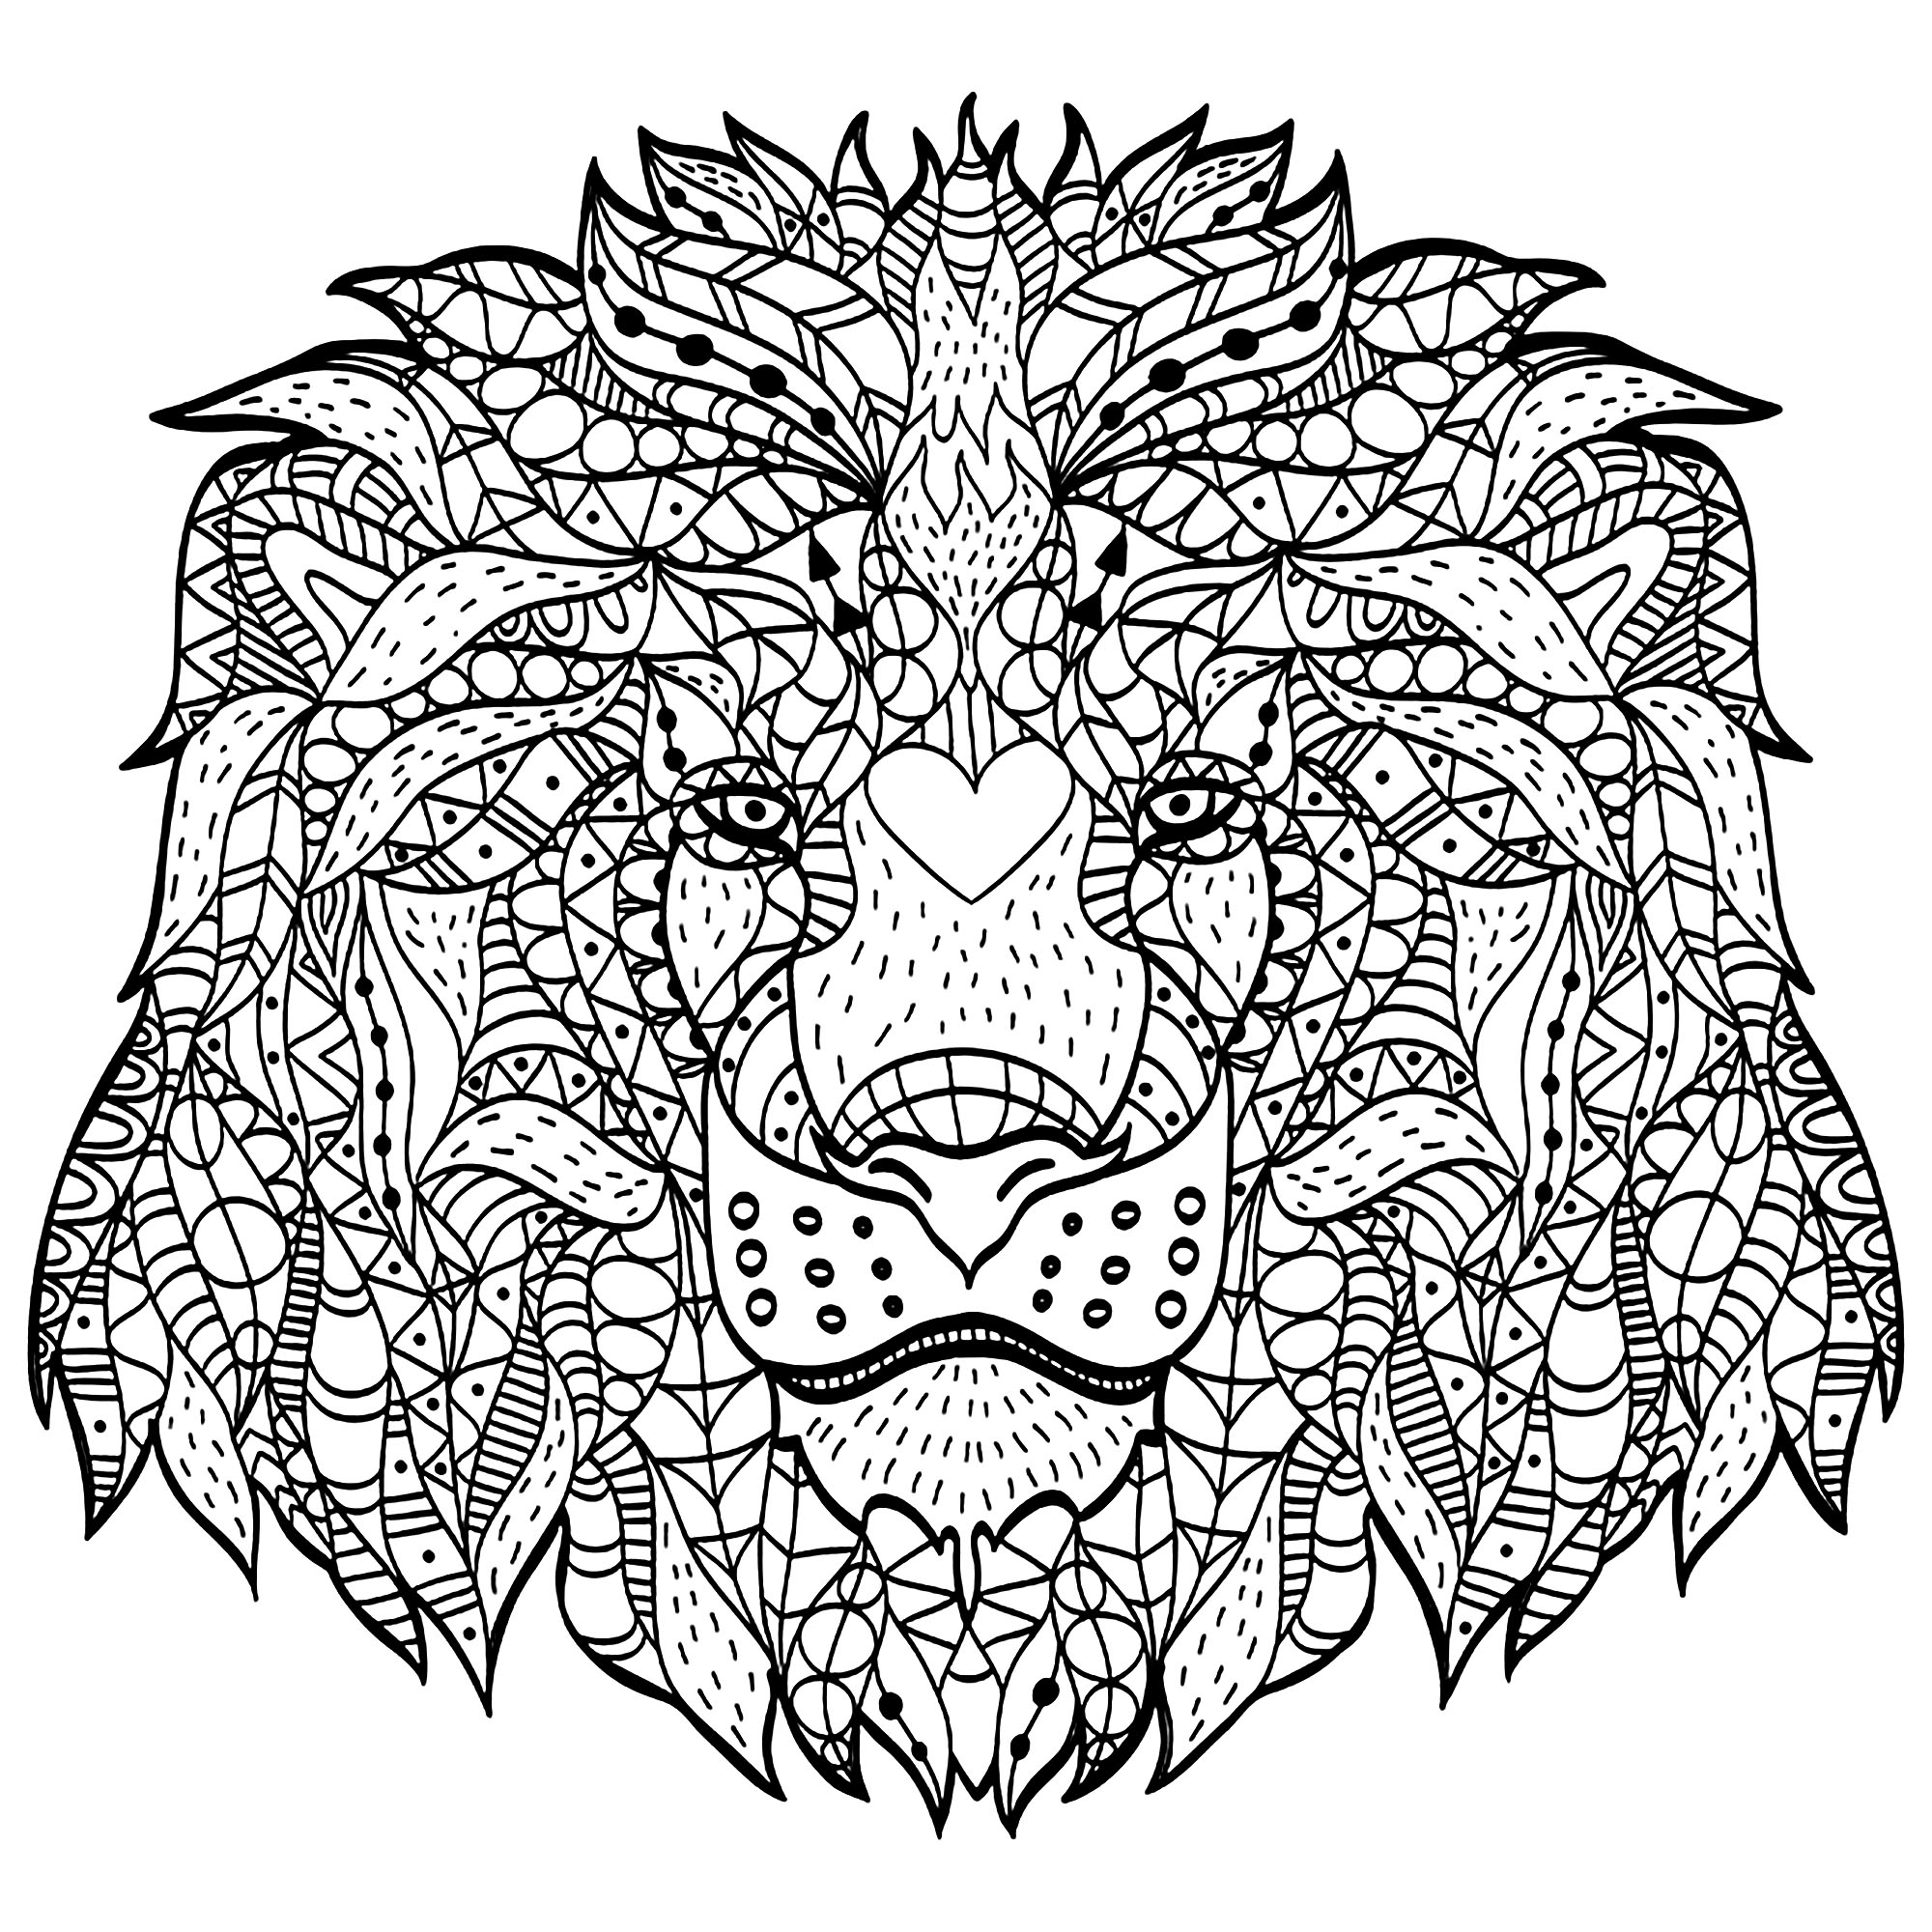 Esta cabeça de leão criada com padrões Zentangle vai exigir-lhe muita concentração! Desfruta!, Artista : Viktoriia Panchenko   Fonte : 123rf